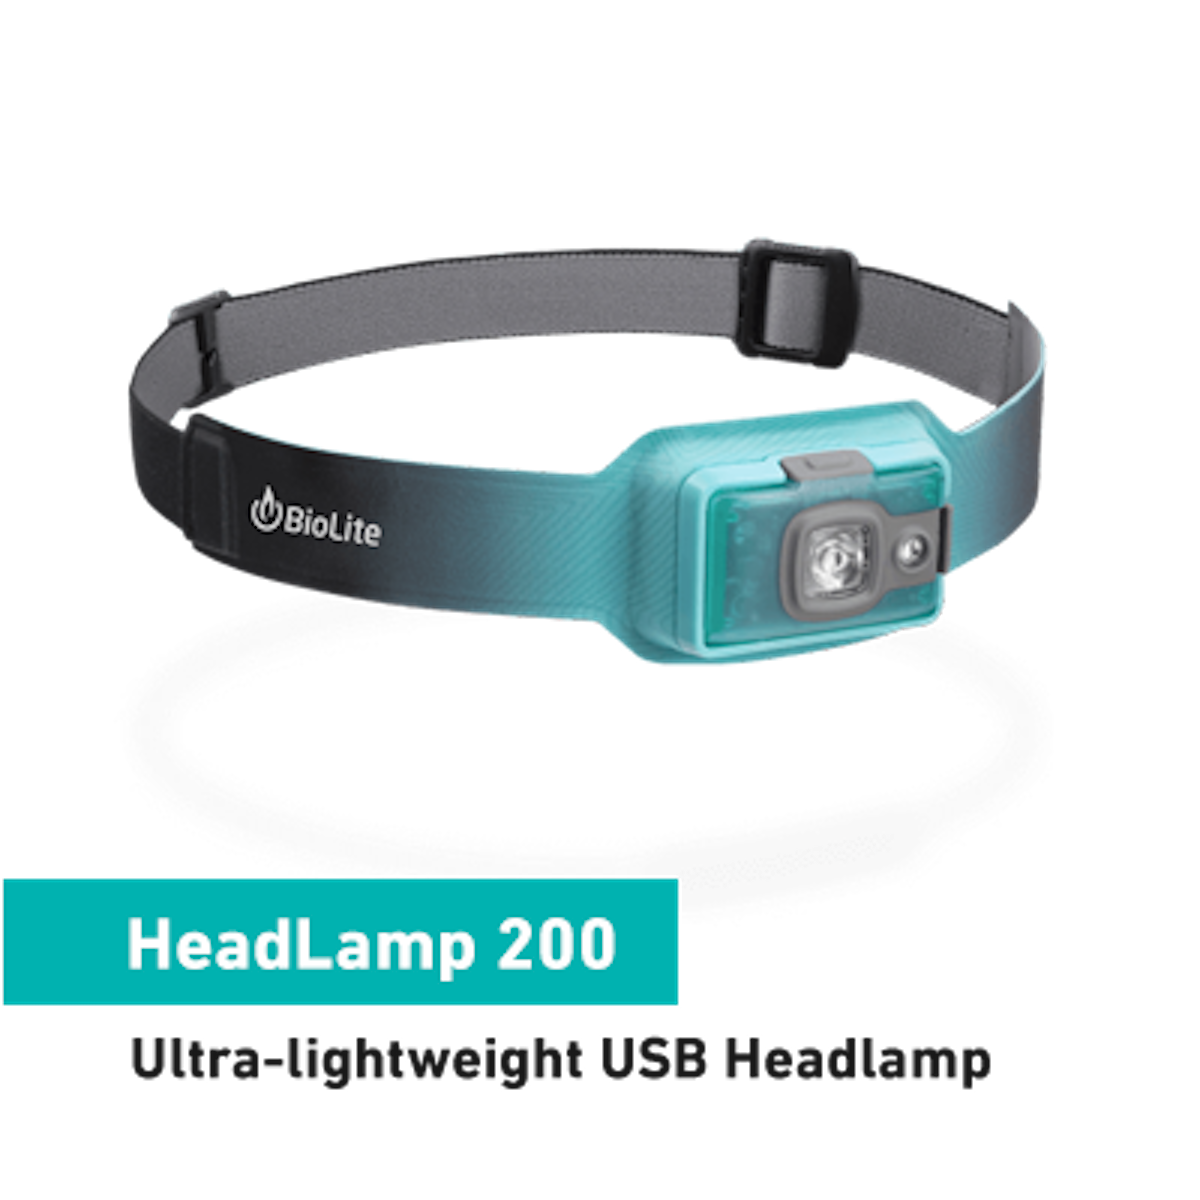 BioLite Headlamp 200 - Ocean Teal